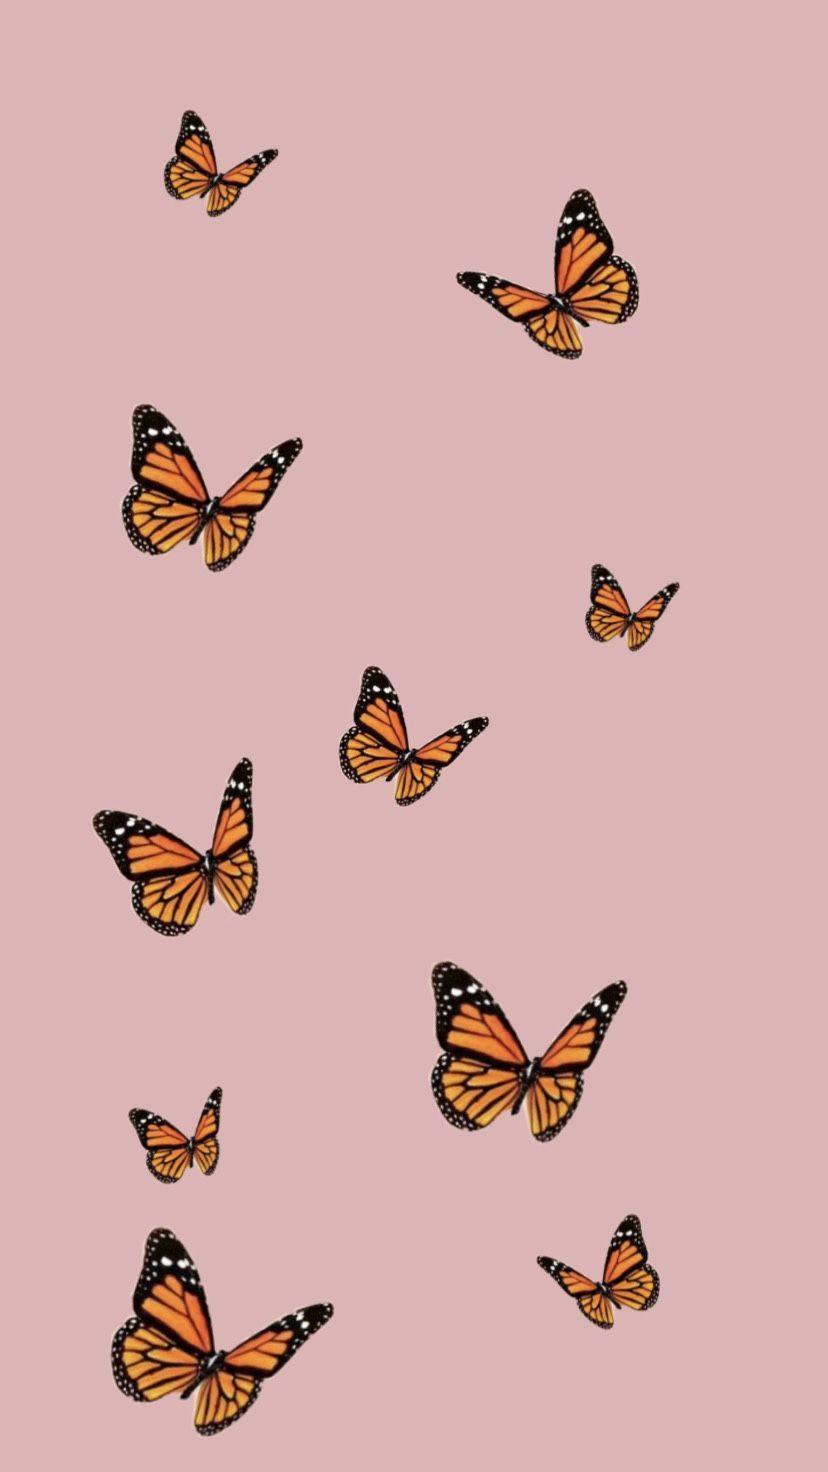 Butterflies Aesthetic Wallpaper